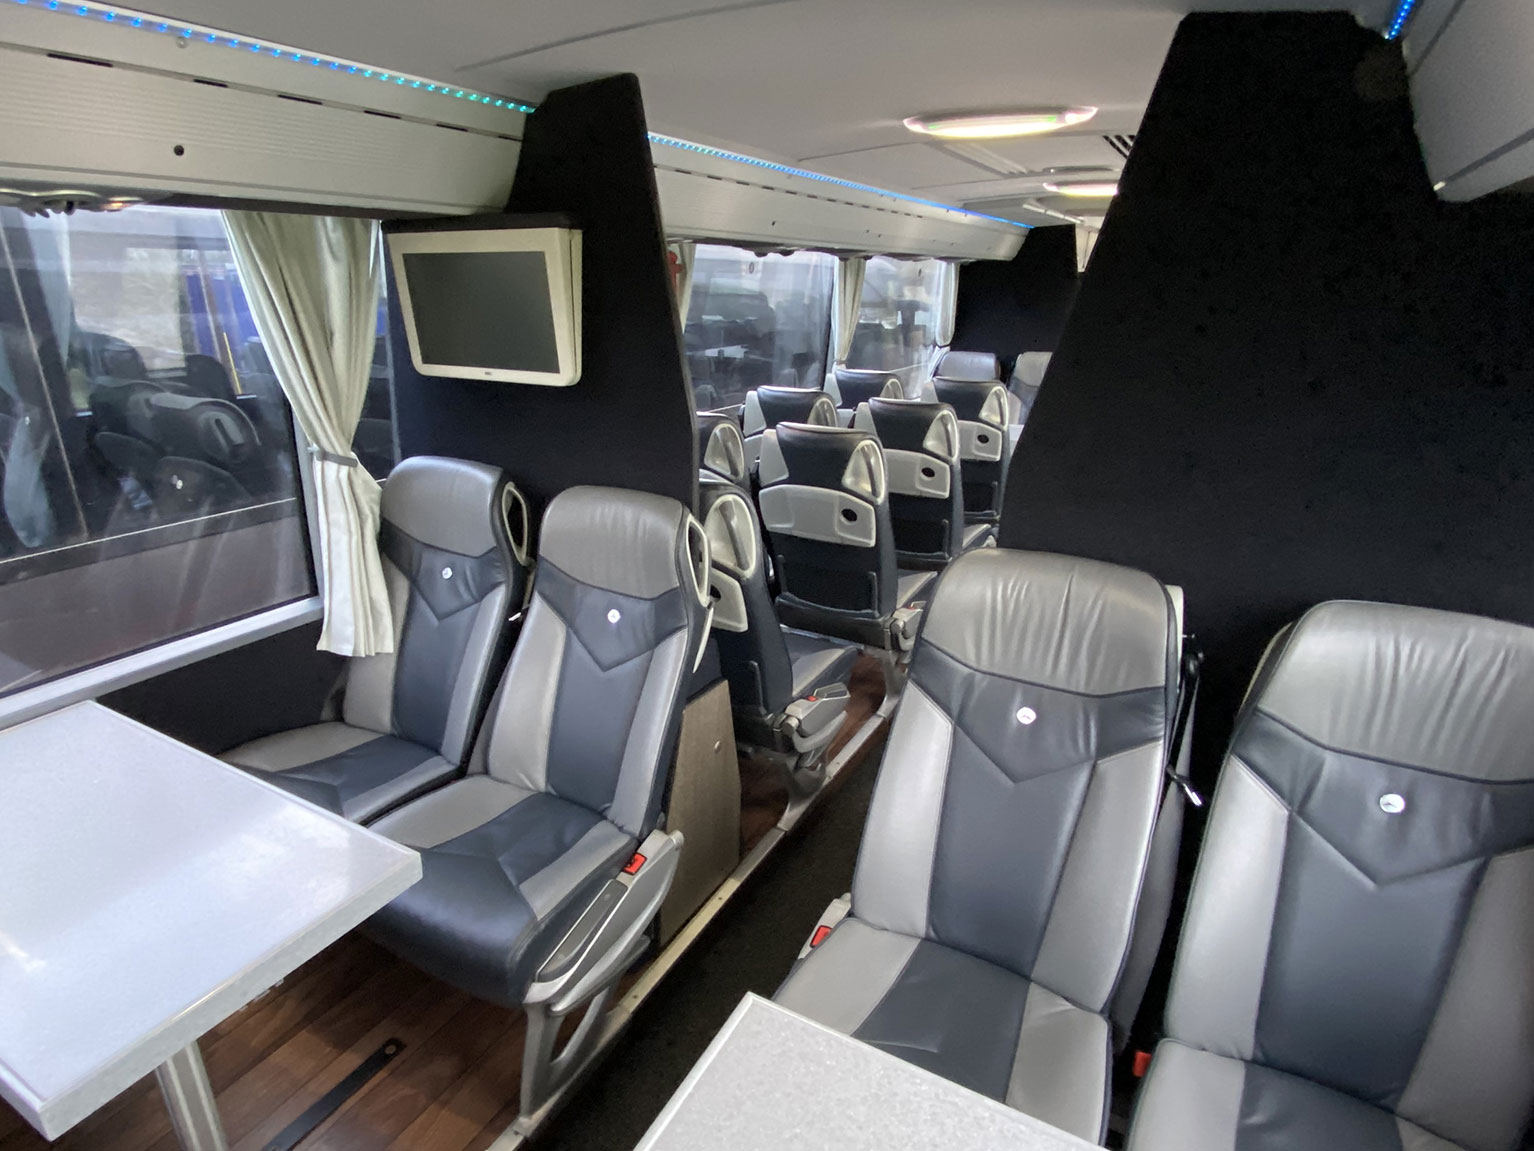 Mercedes Tourismo 41-Seat Luxury Coach - Go Travel Scotland